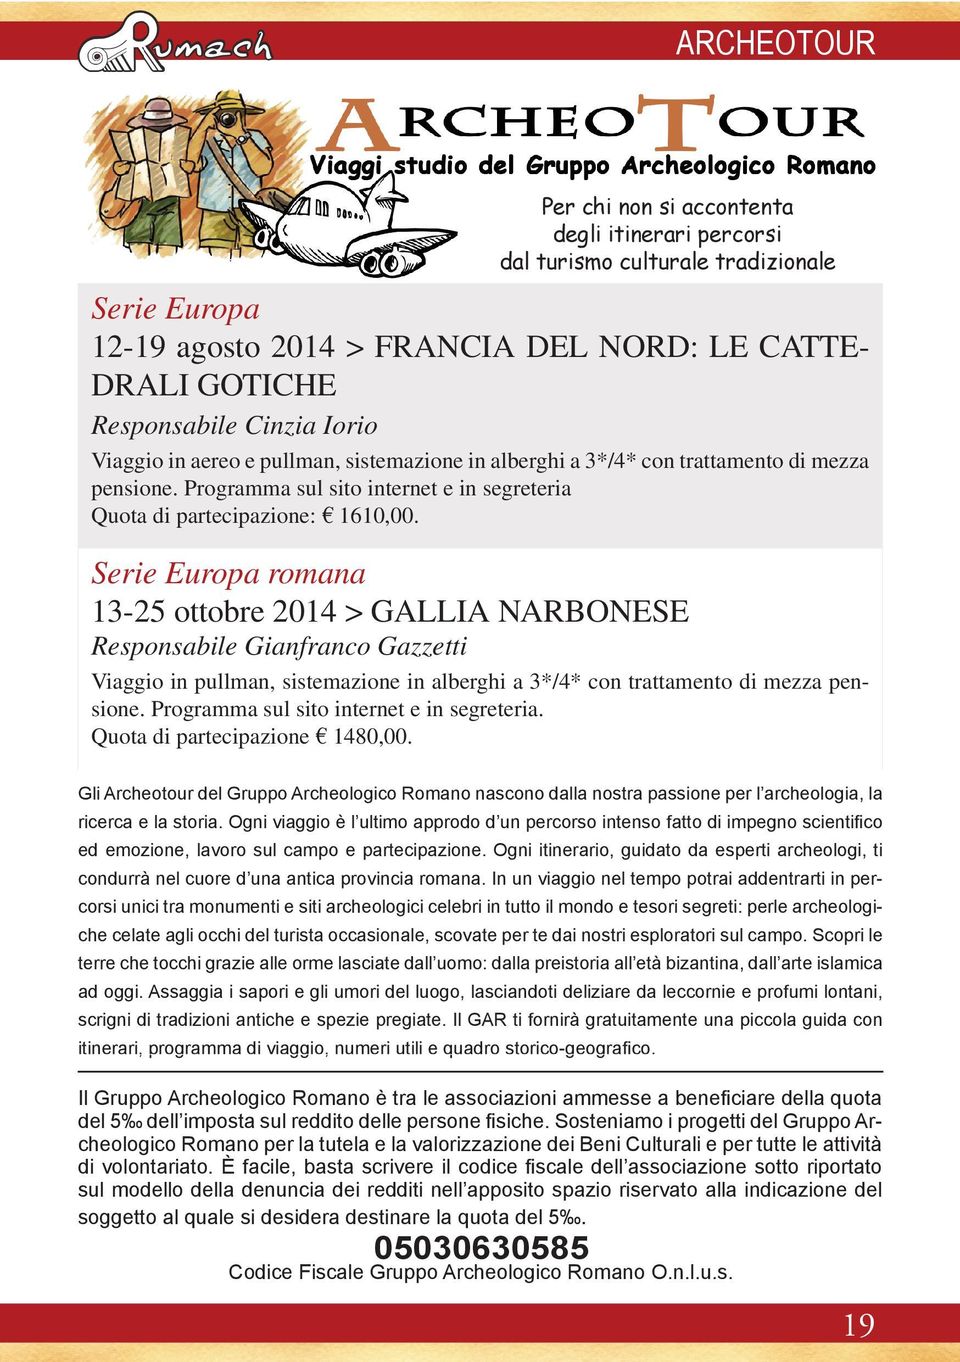 Serie Europa romana 13-25 ottobre 2014 > GALLIA NARBONESE Responsabile Gianfranco Gazzetti Viaggio in pullman, sistemazione in alberghi a 3*/4* con trattamento di mezza pensione.